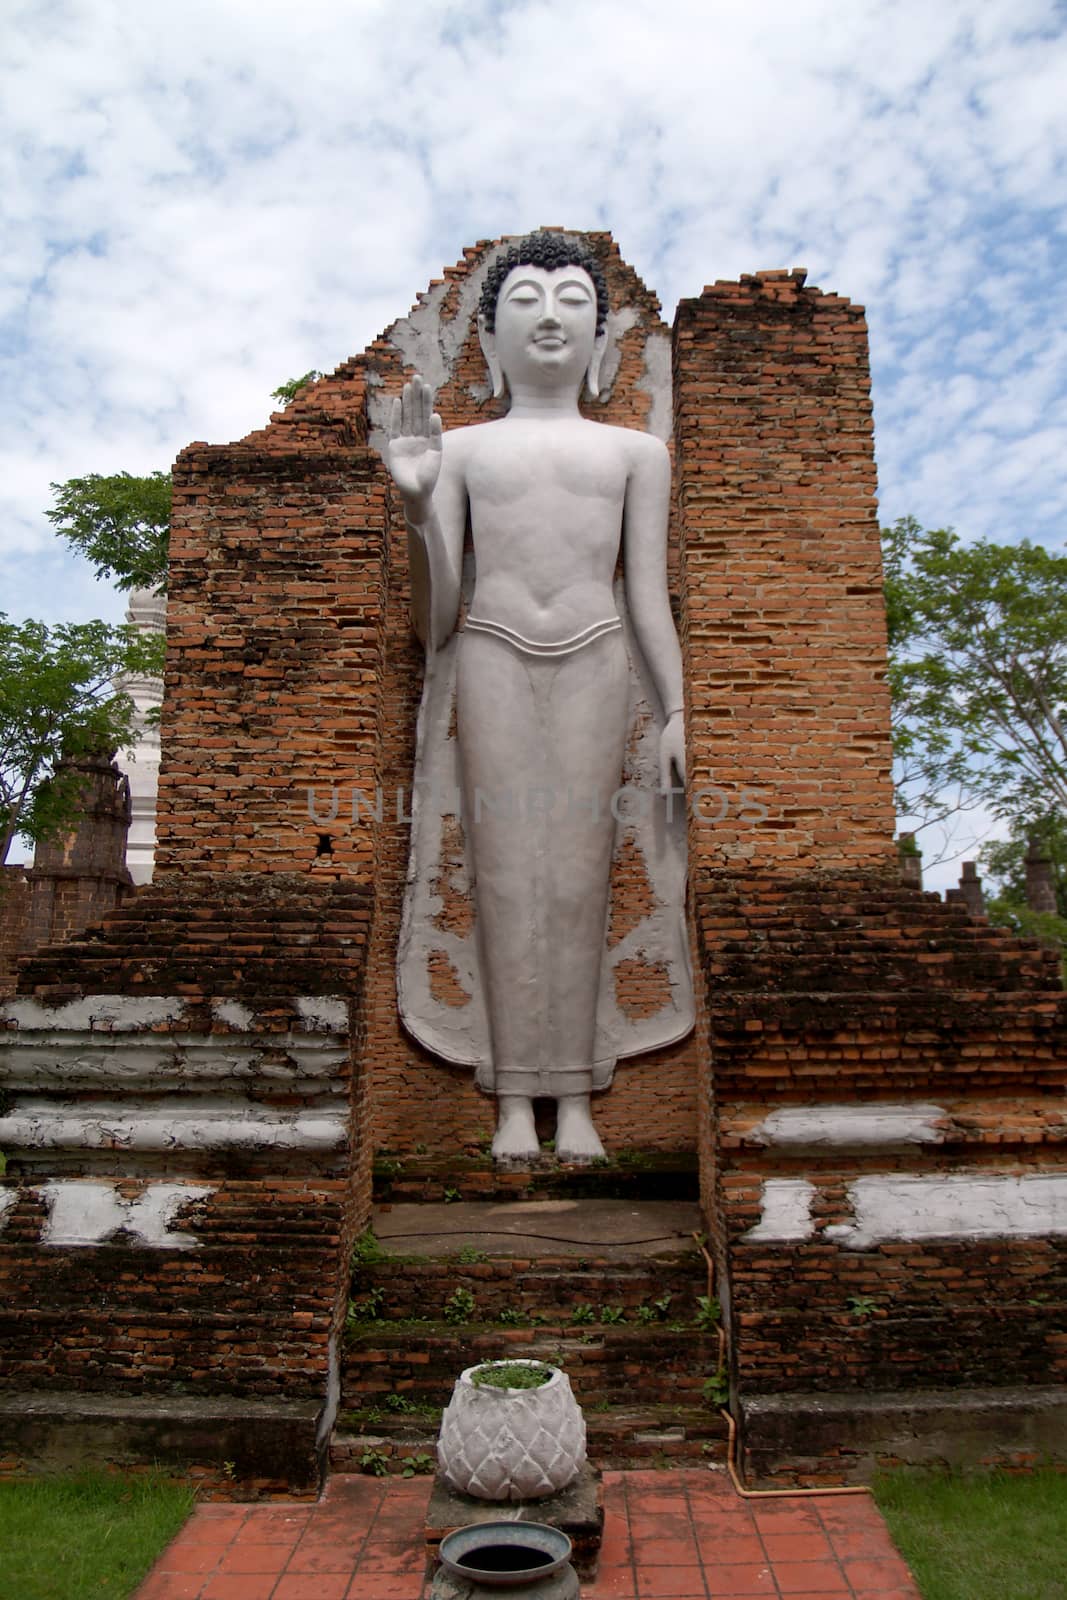 Image of buddha standing